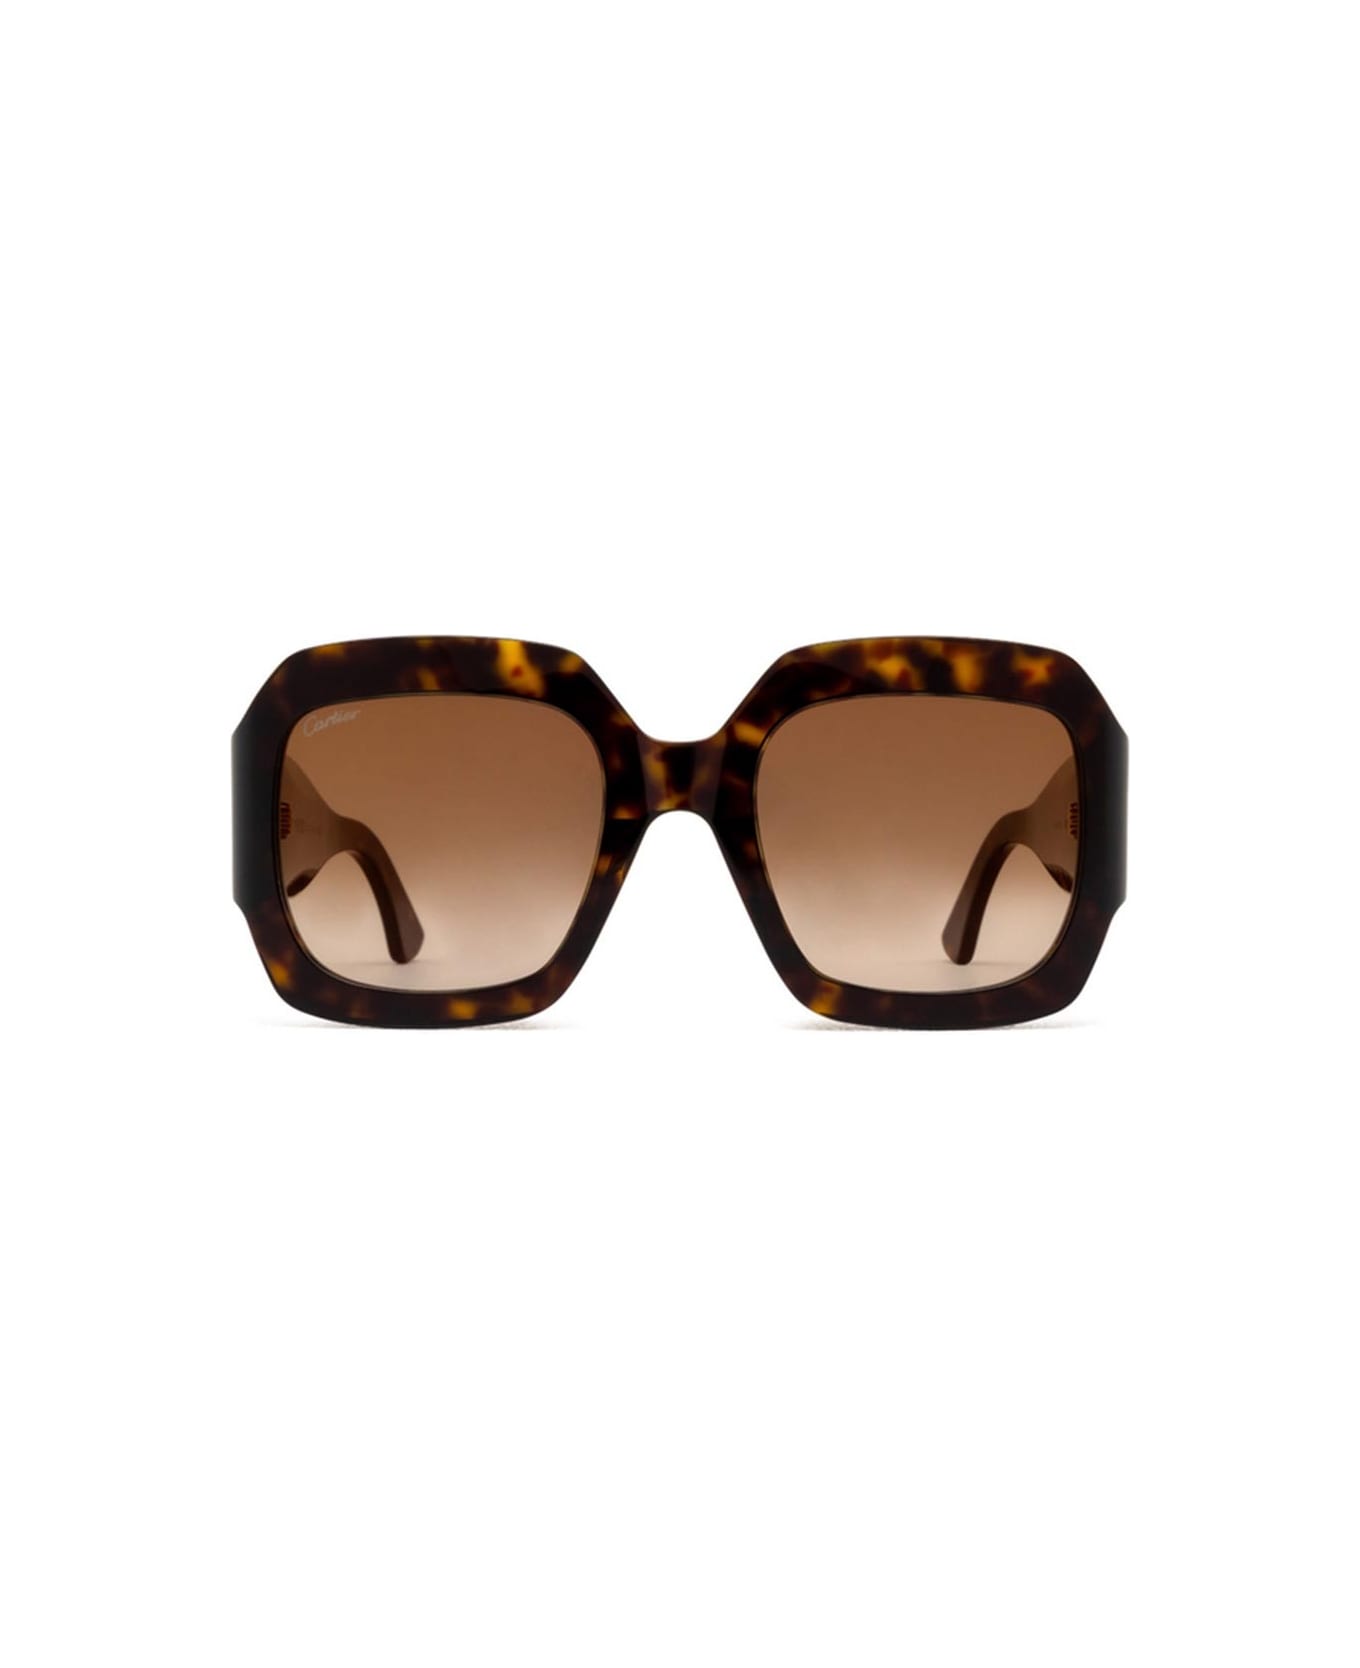 Cartier Eyewear Sunglasses - Havana/Marrone sfumato サングラス